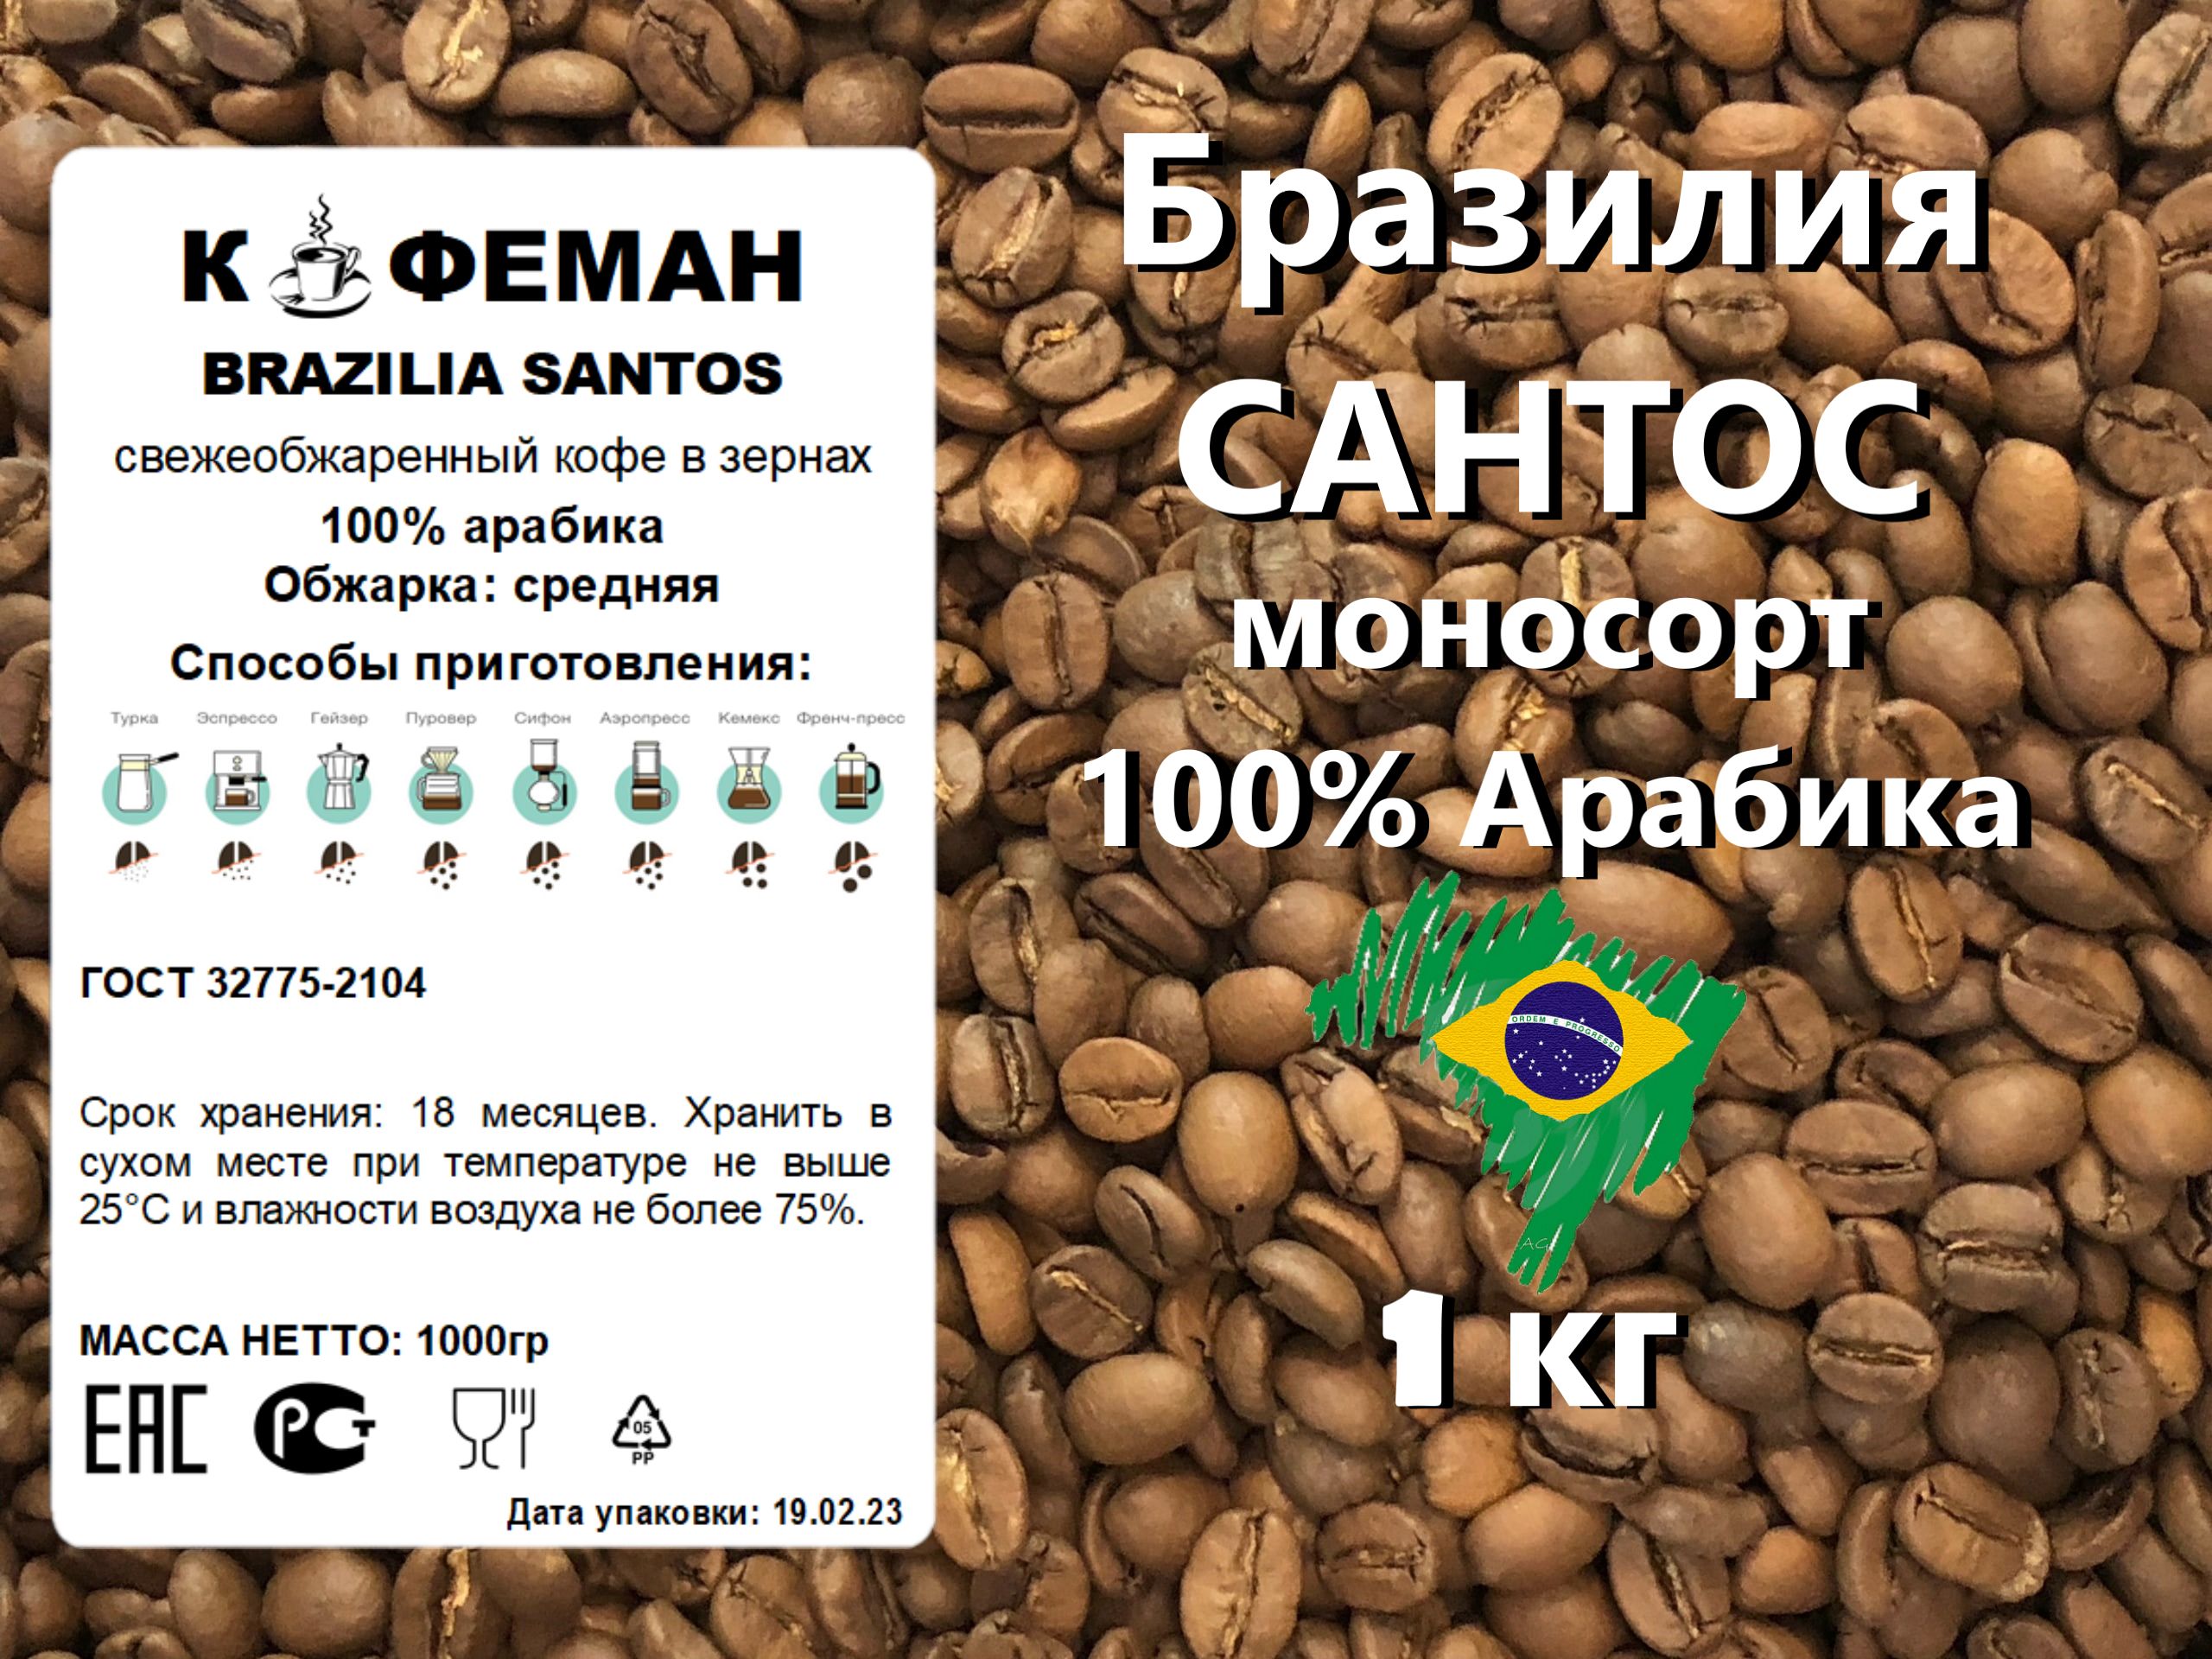 Бразилия Сантос кофе. Цена зерна Бразилия Сантос. Бразилия кофе плантация фото черно белые. Кофе бразилия сантос купить